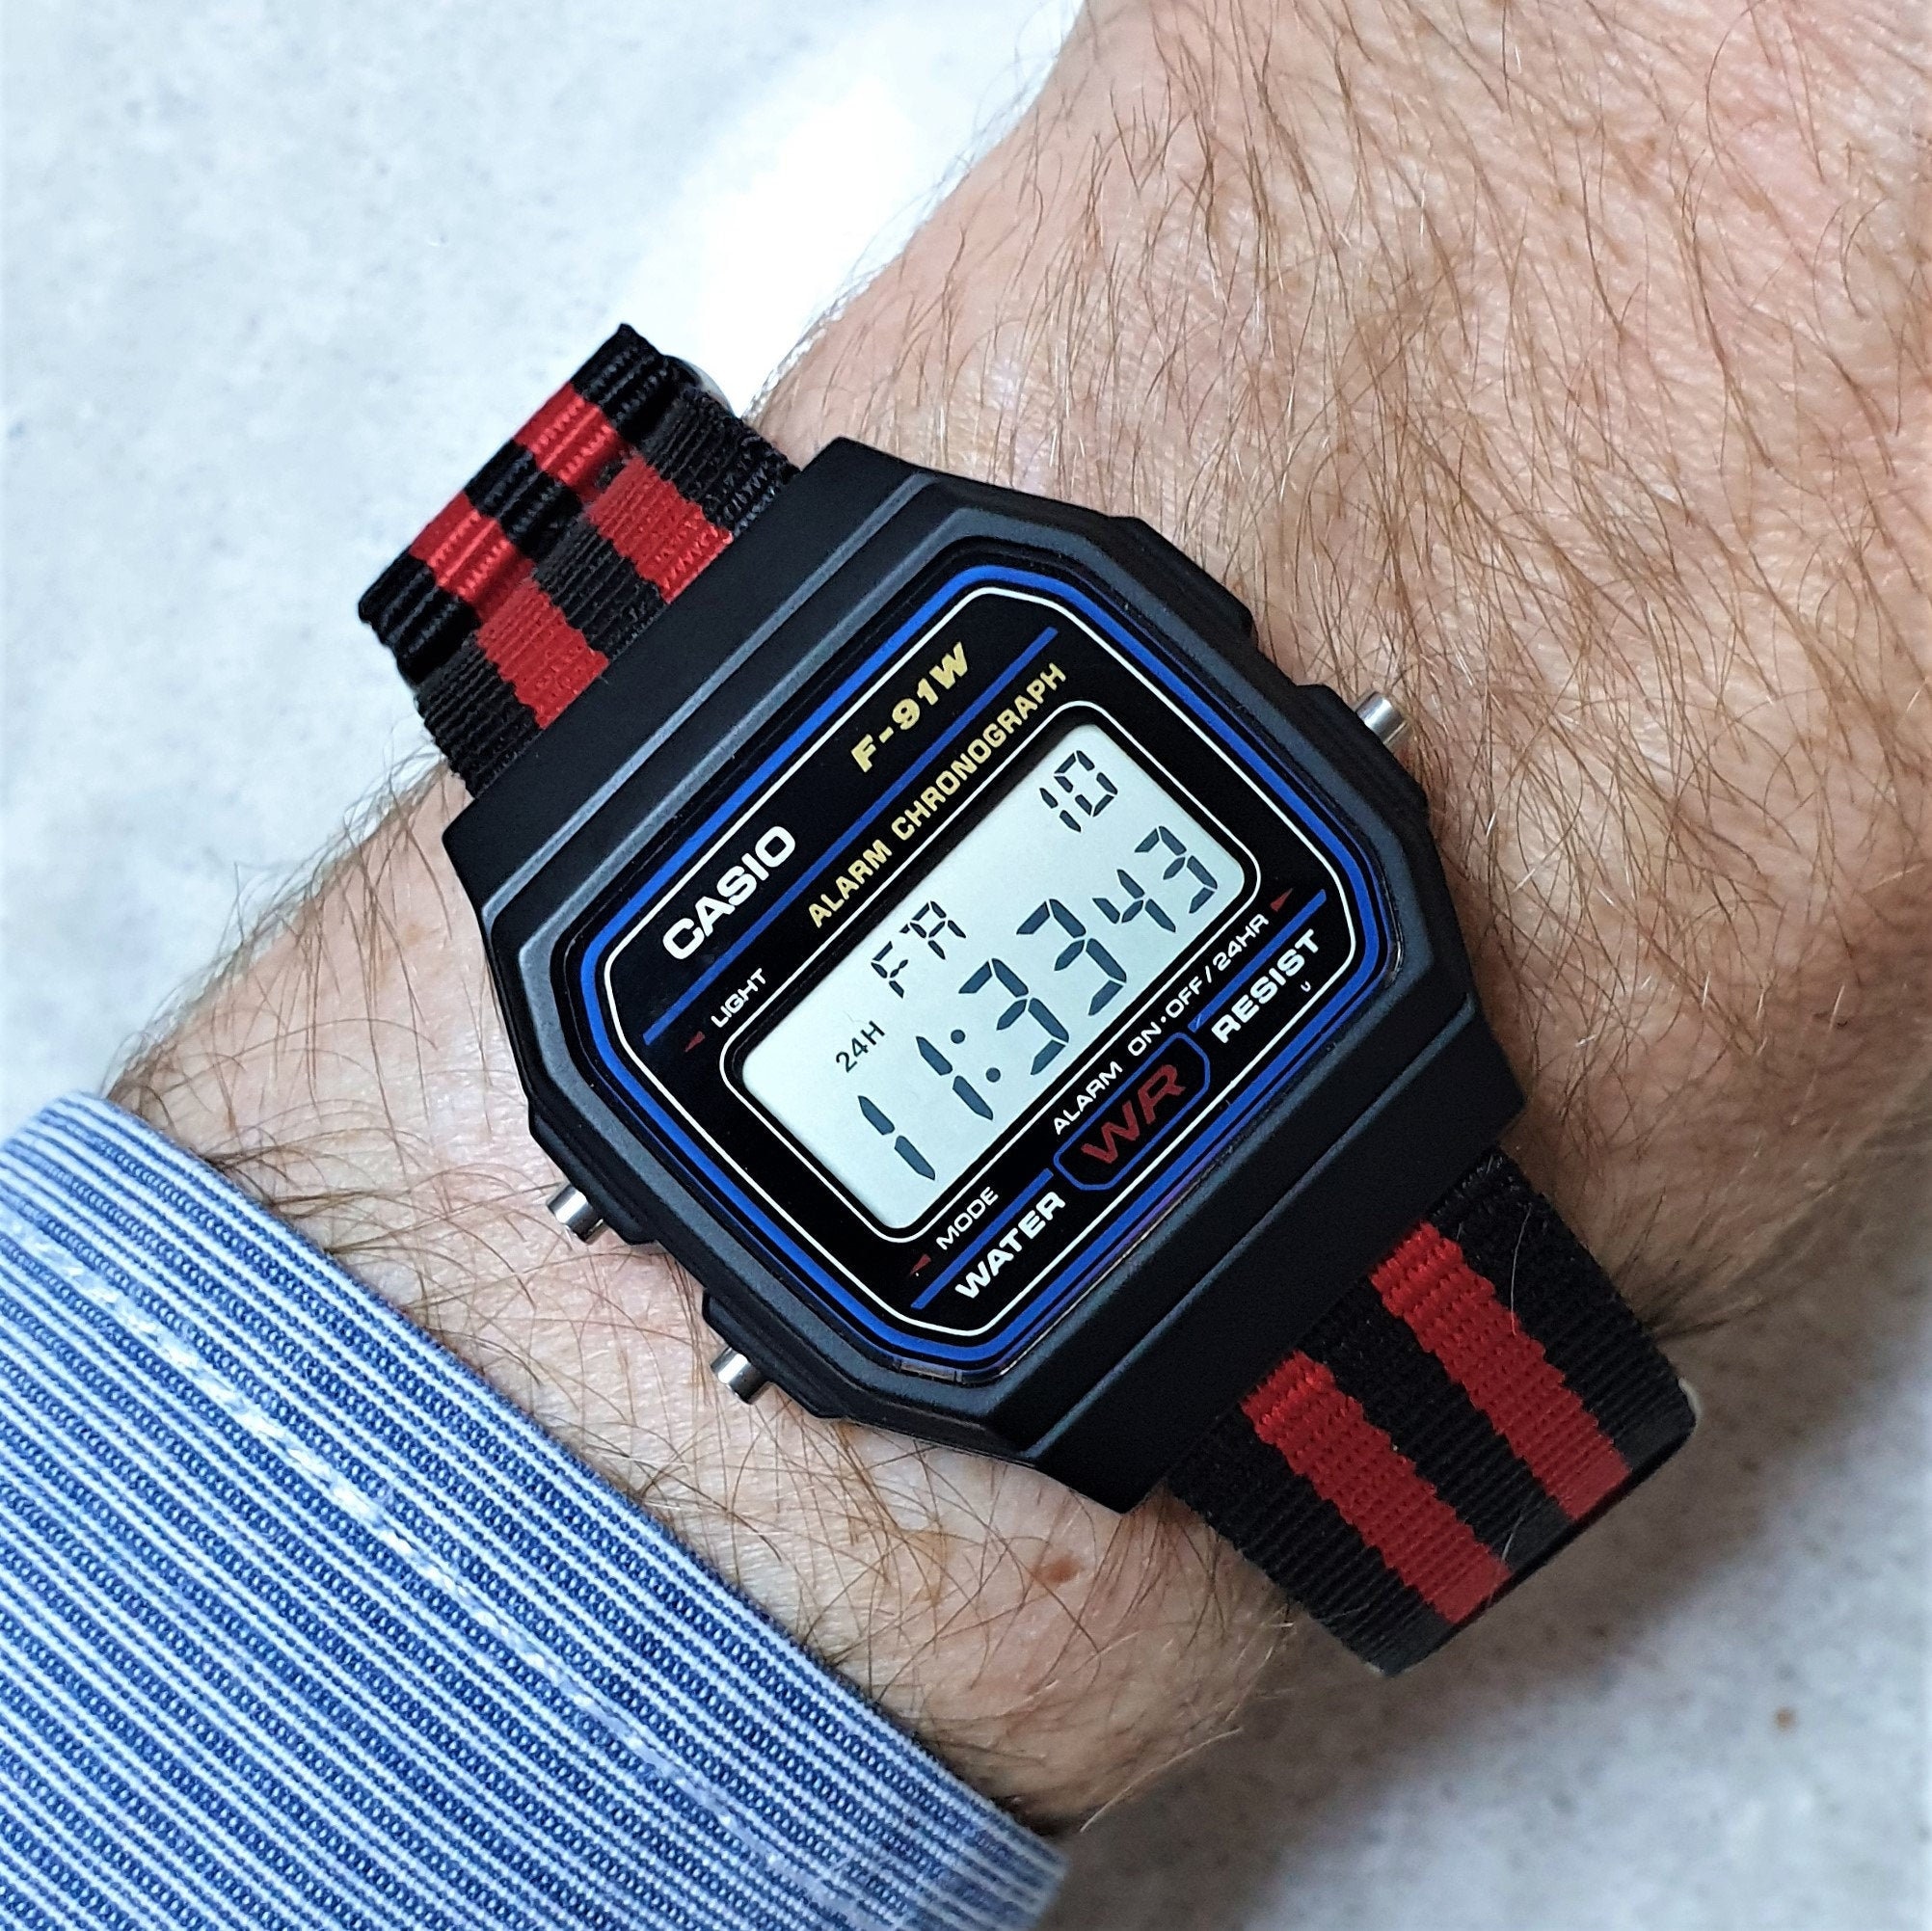 Reloj Casio F-91 con correa de nylon rojo y negro, El Diablo. Seleccione su  propio color de pantalla, 8 colores para elegir -  México